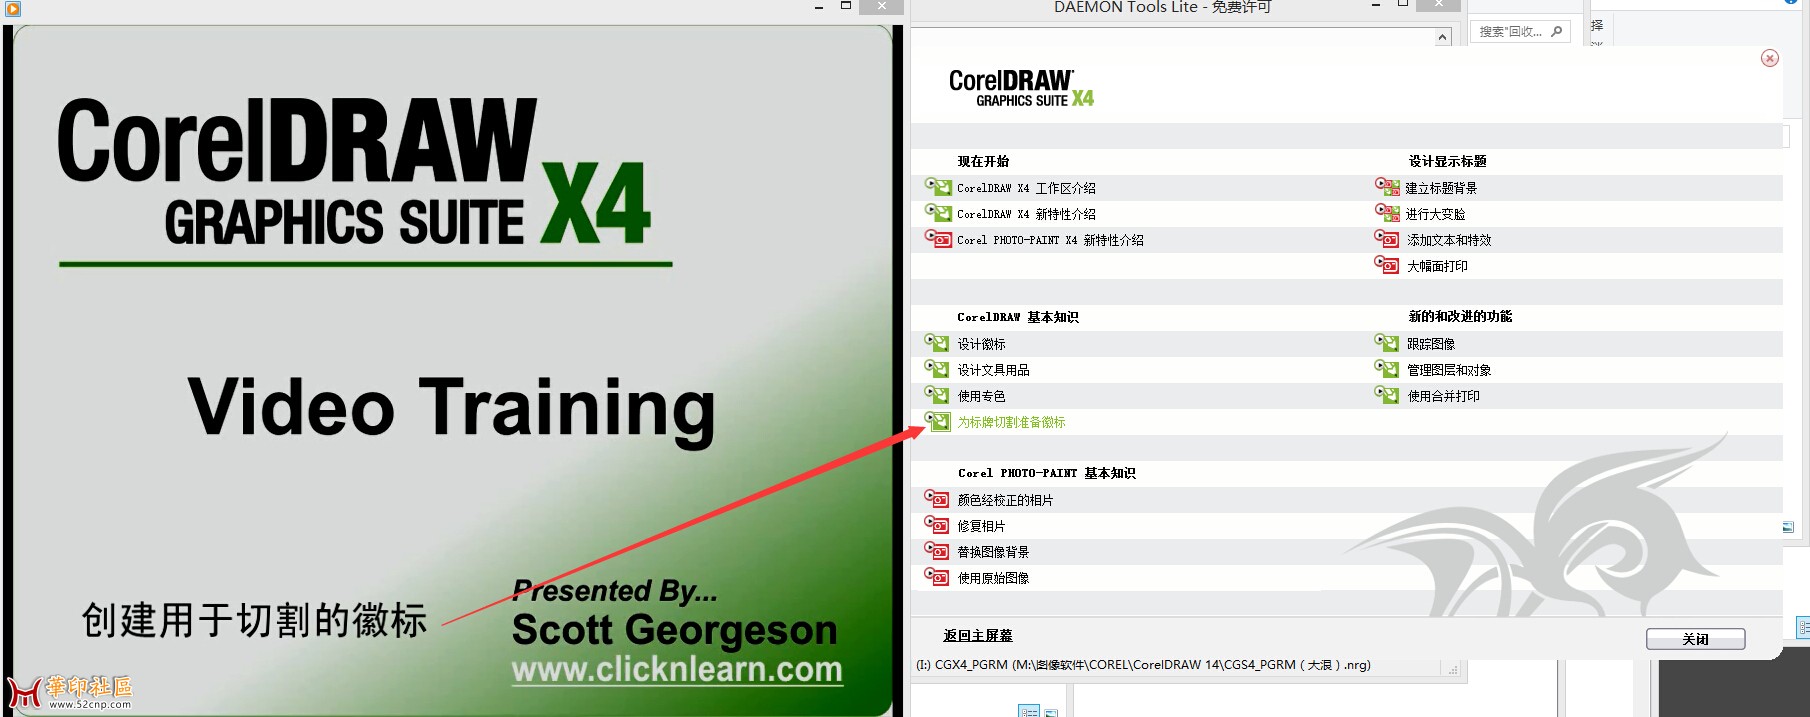 寻找完整的CDX4中文版安装文件{tag}(1)